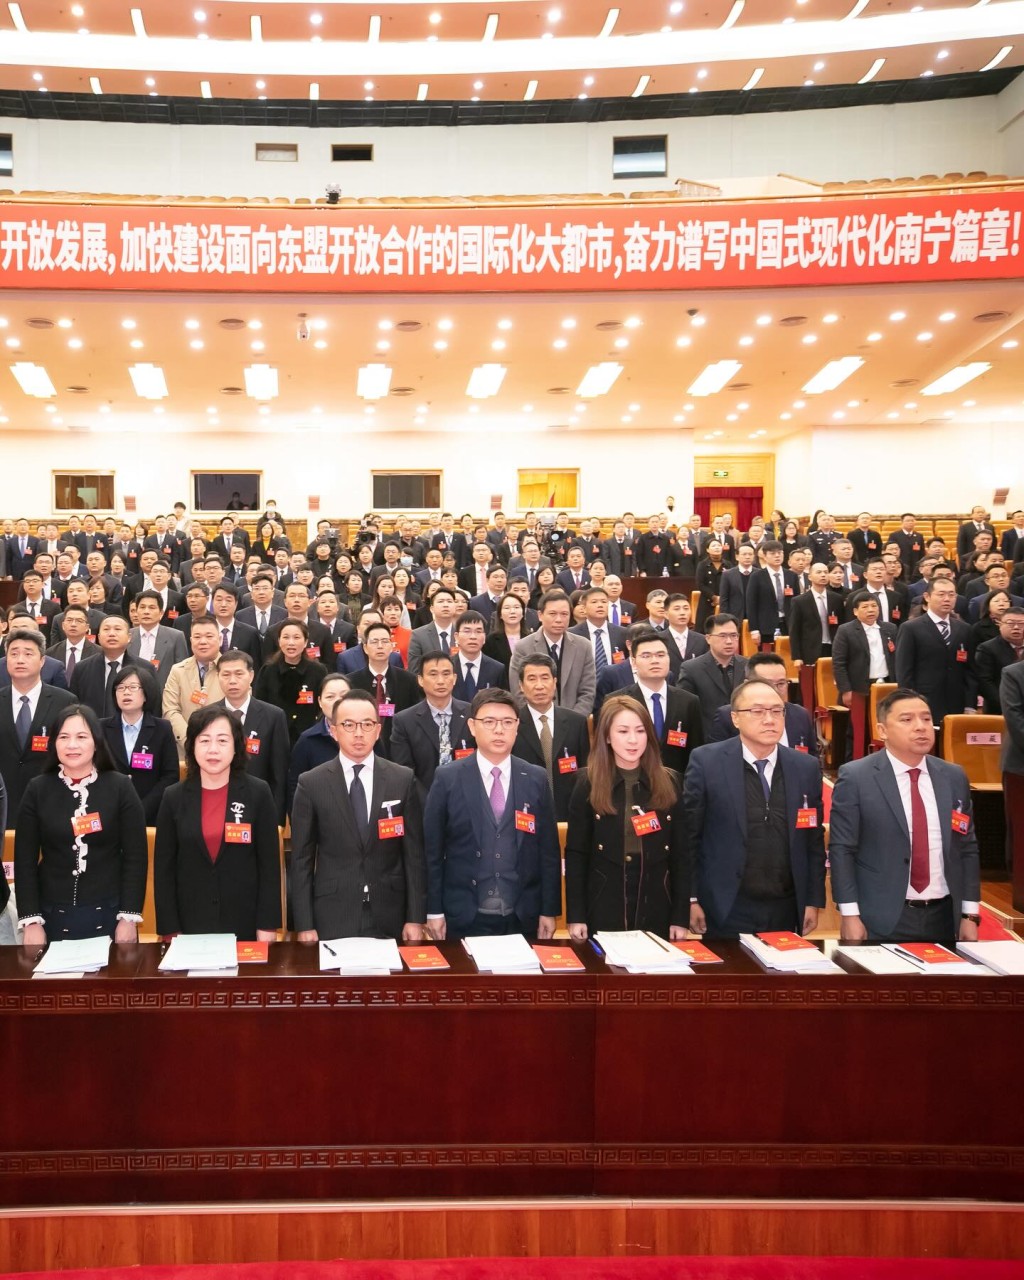 李焯宁昨日（29日）在IG分享南宁市政协会议顺利开幕的照片。